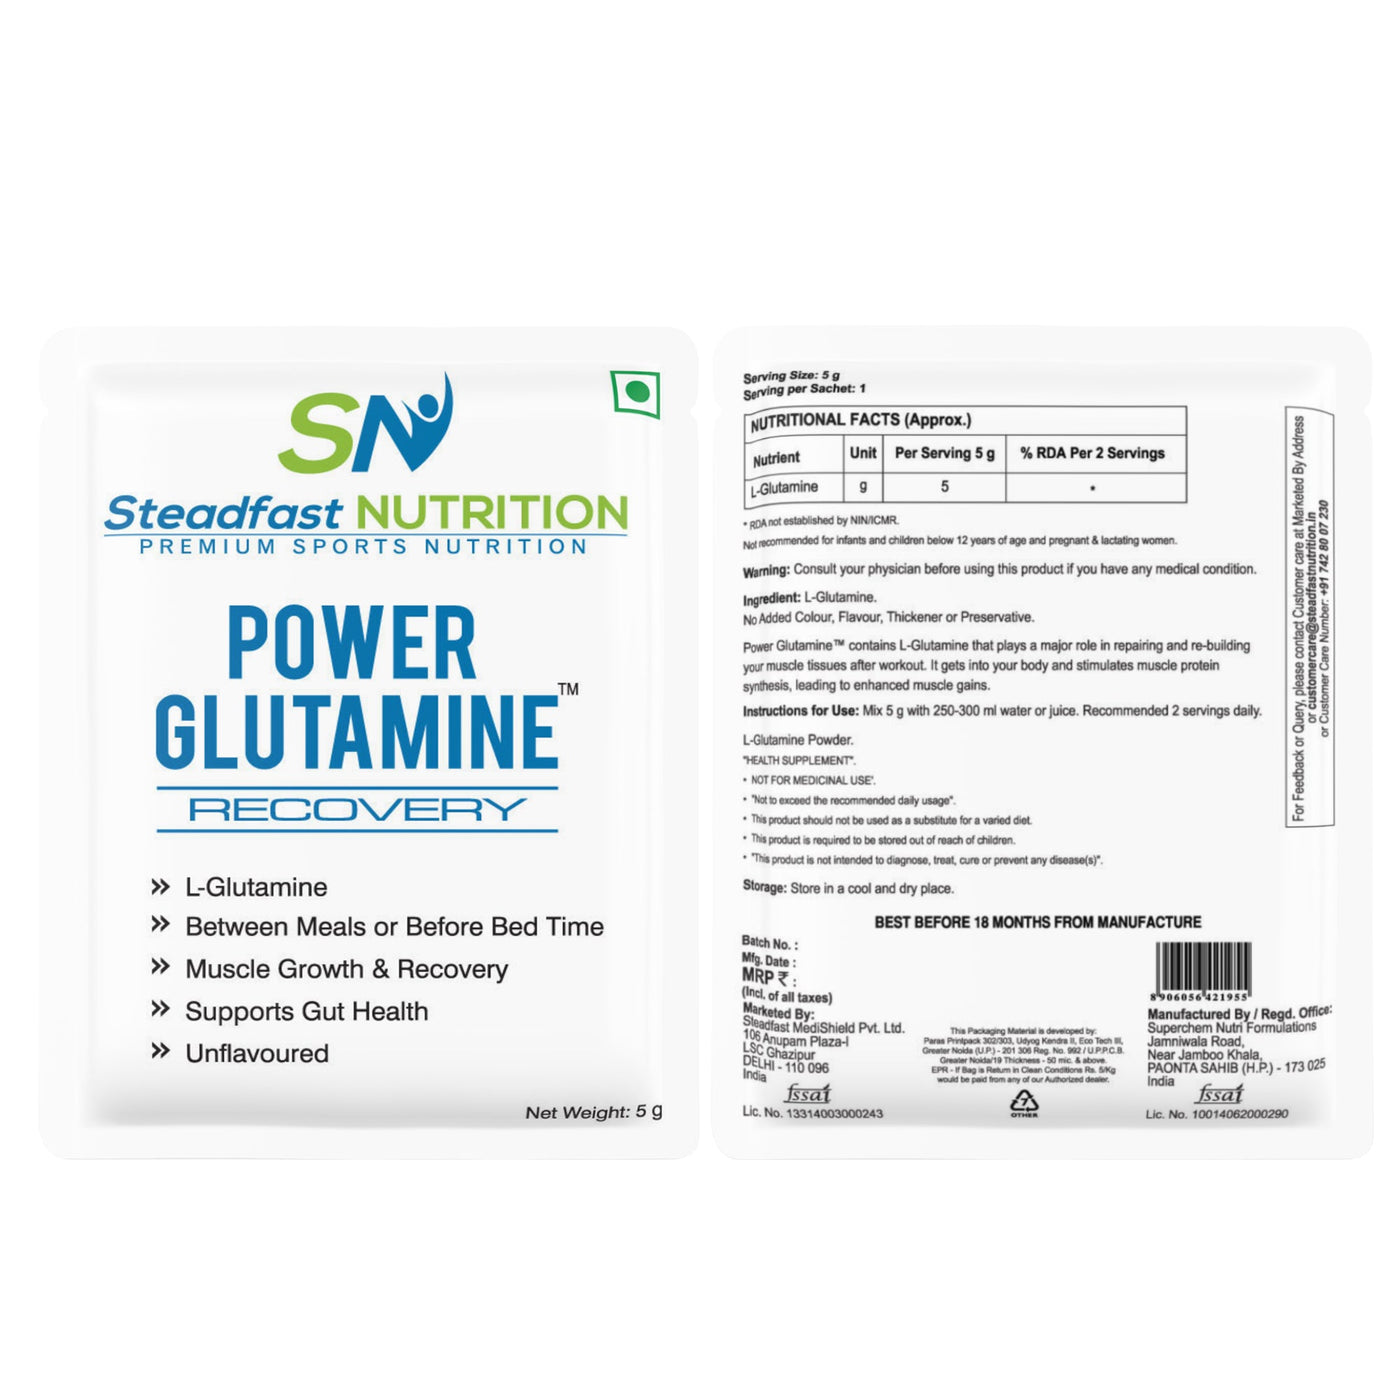 Steadfast Power Glutamine - Cyclop.in